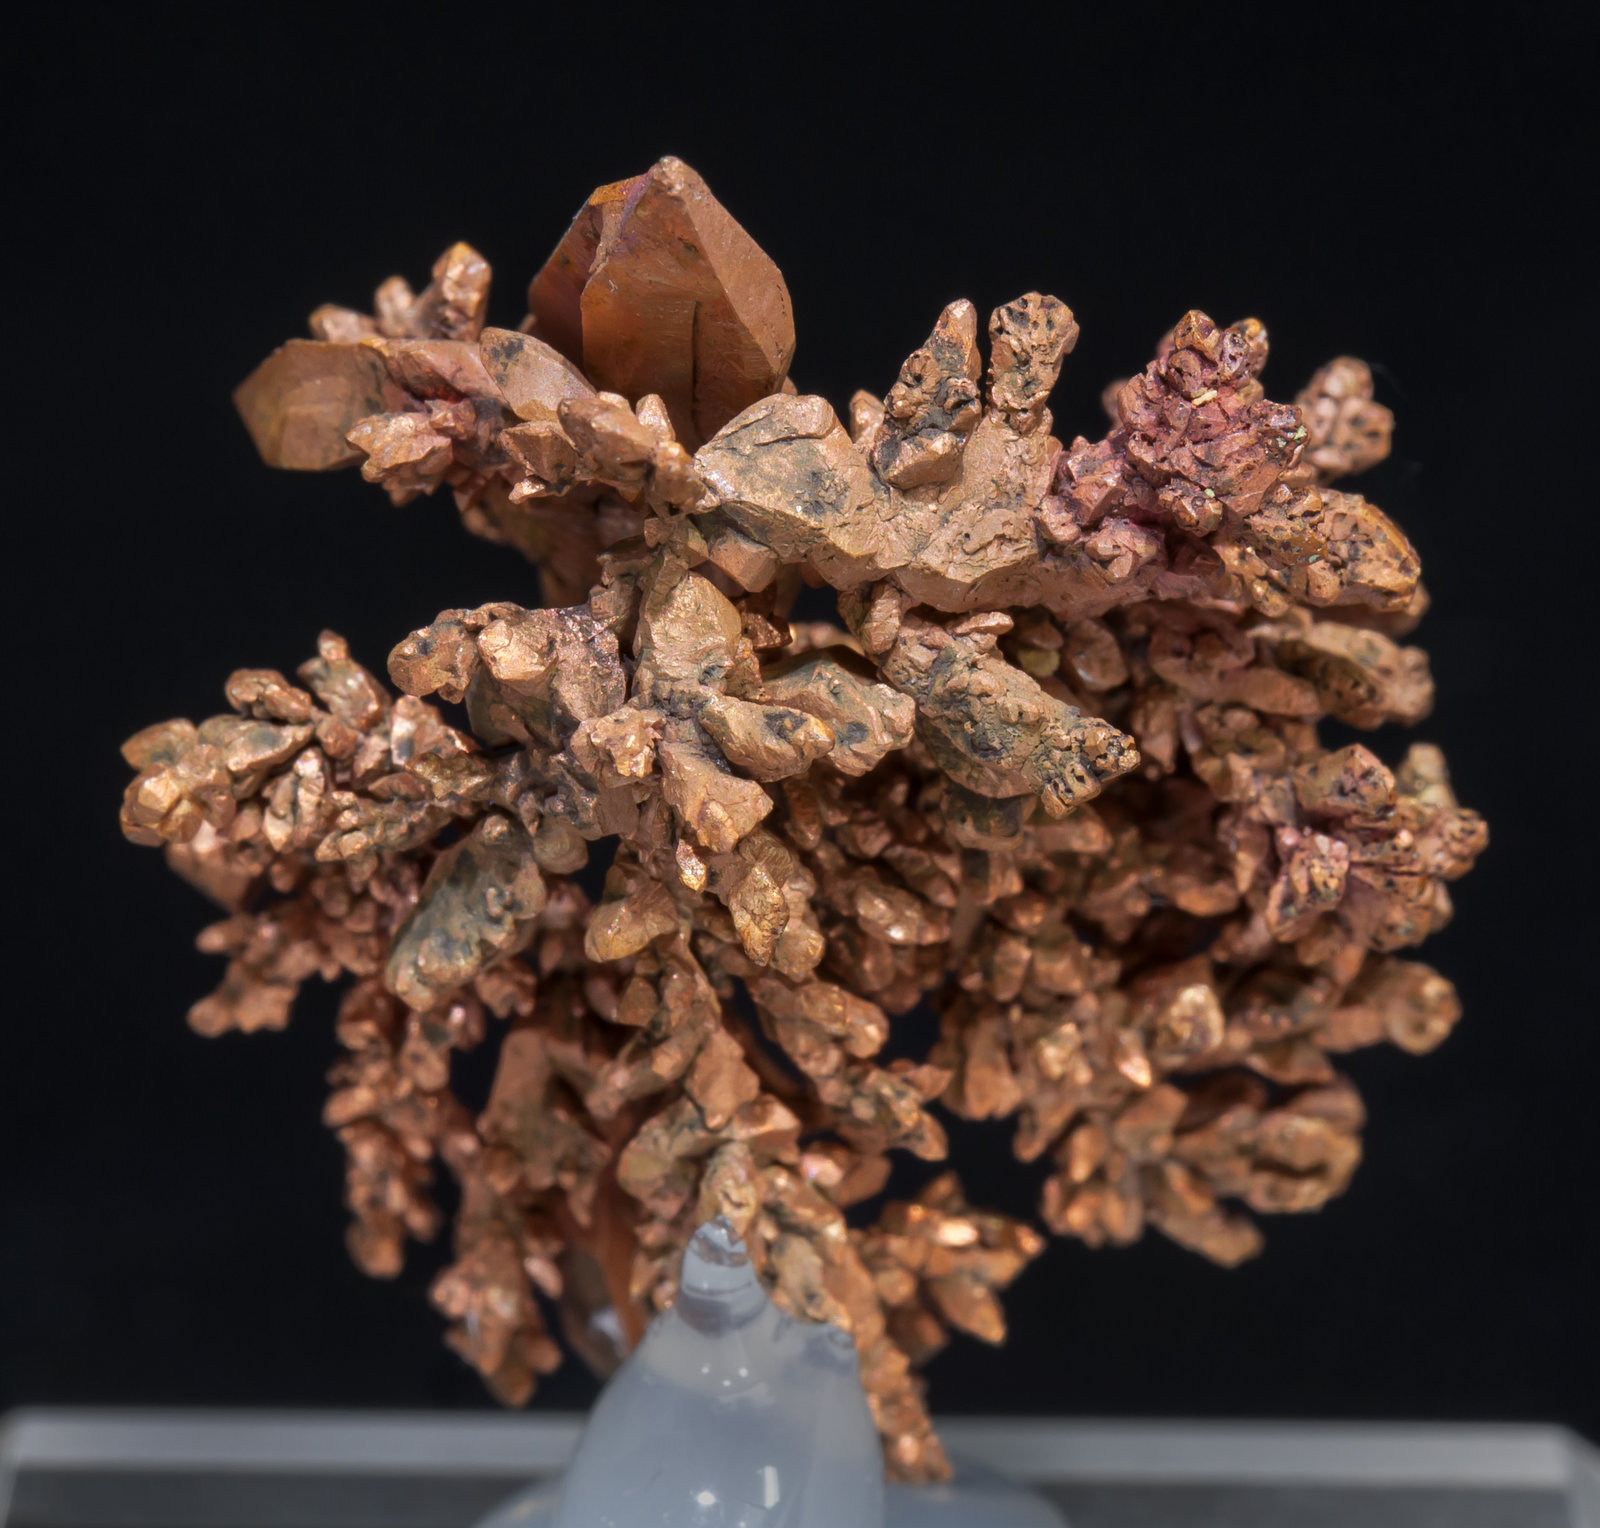 specimens/s_imagesAD1/Copper-TE48AD1r.jpg